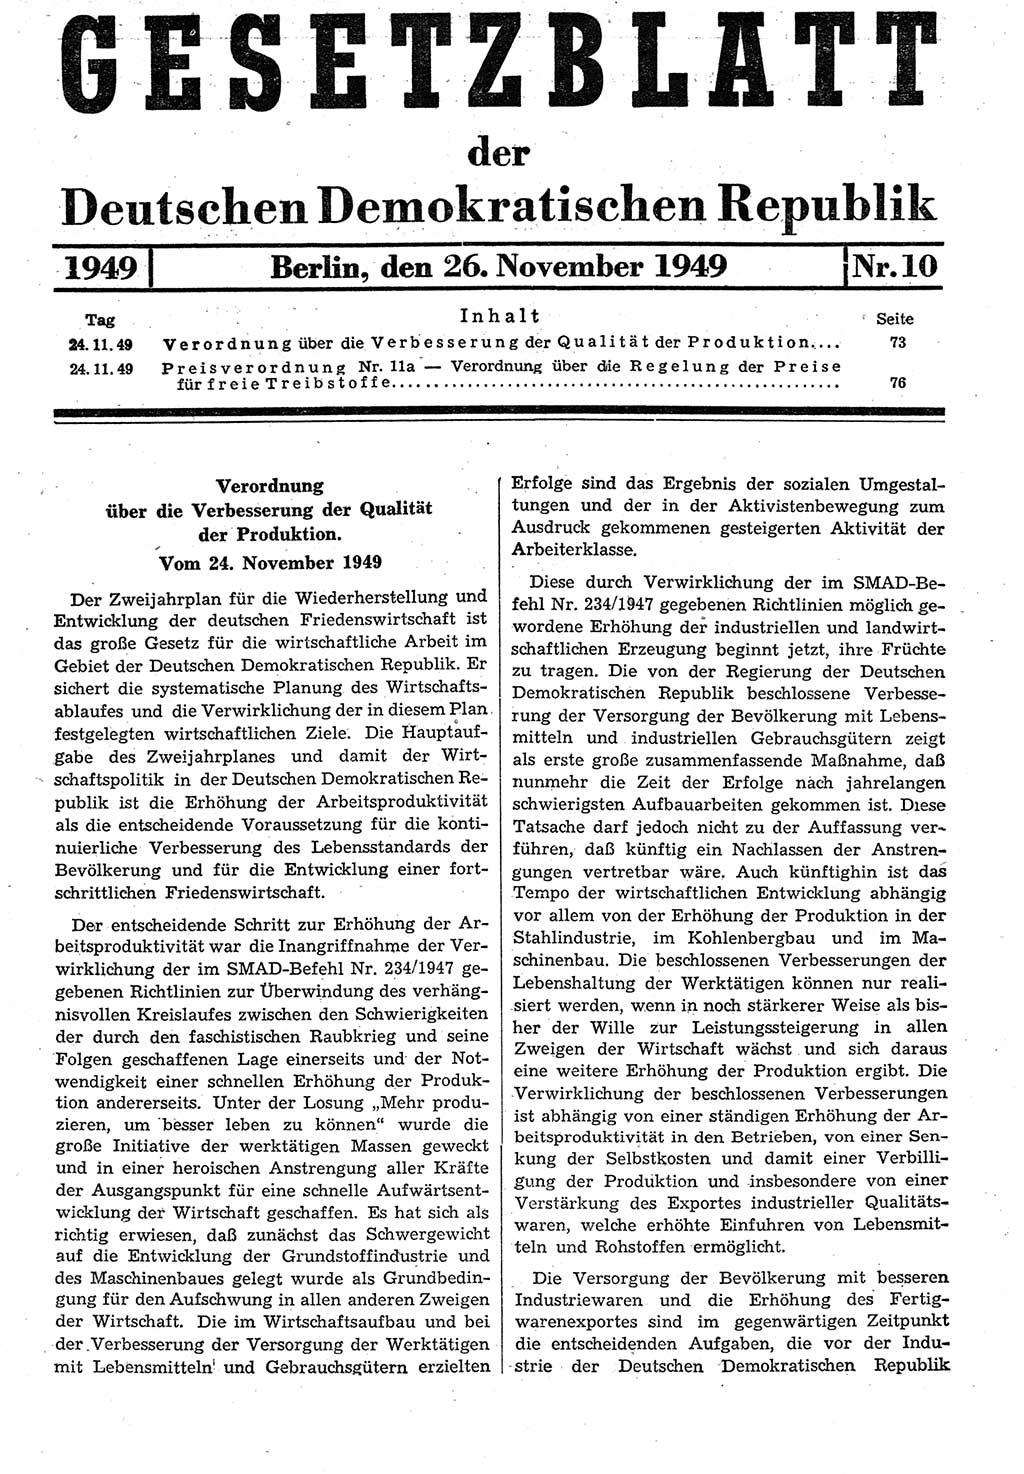 Gesetzblatt (GBl.) der Deutschen Demokratischen Republik (DDR) 1949, Seite 73 (GBl. DDR 1949, S. 73)